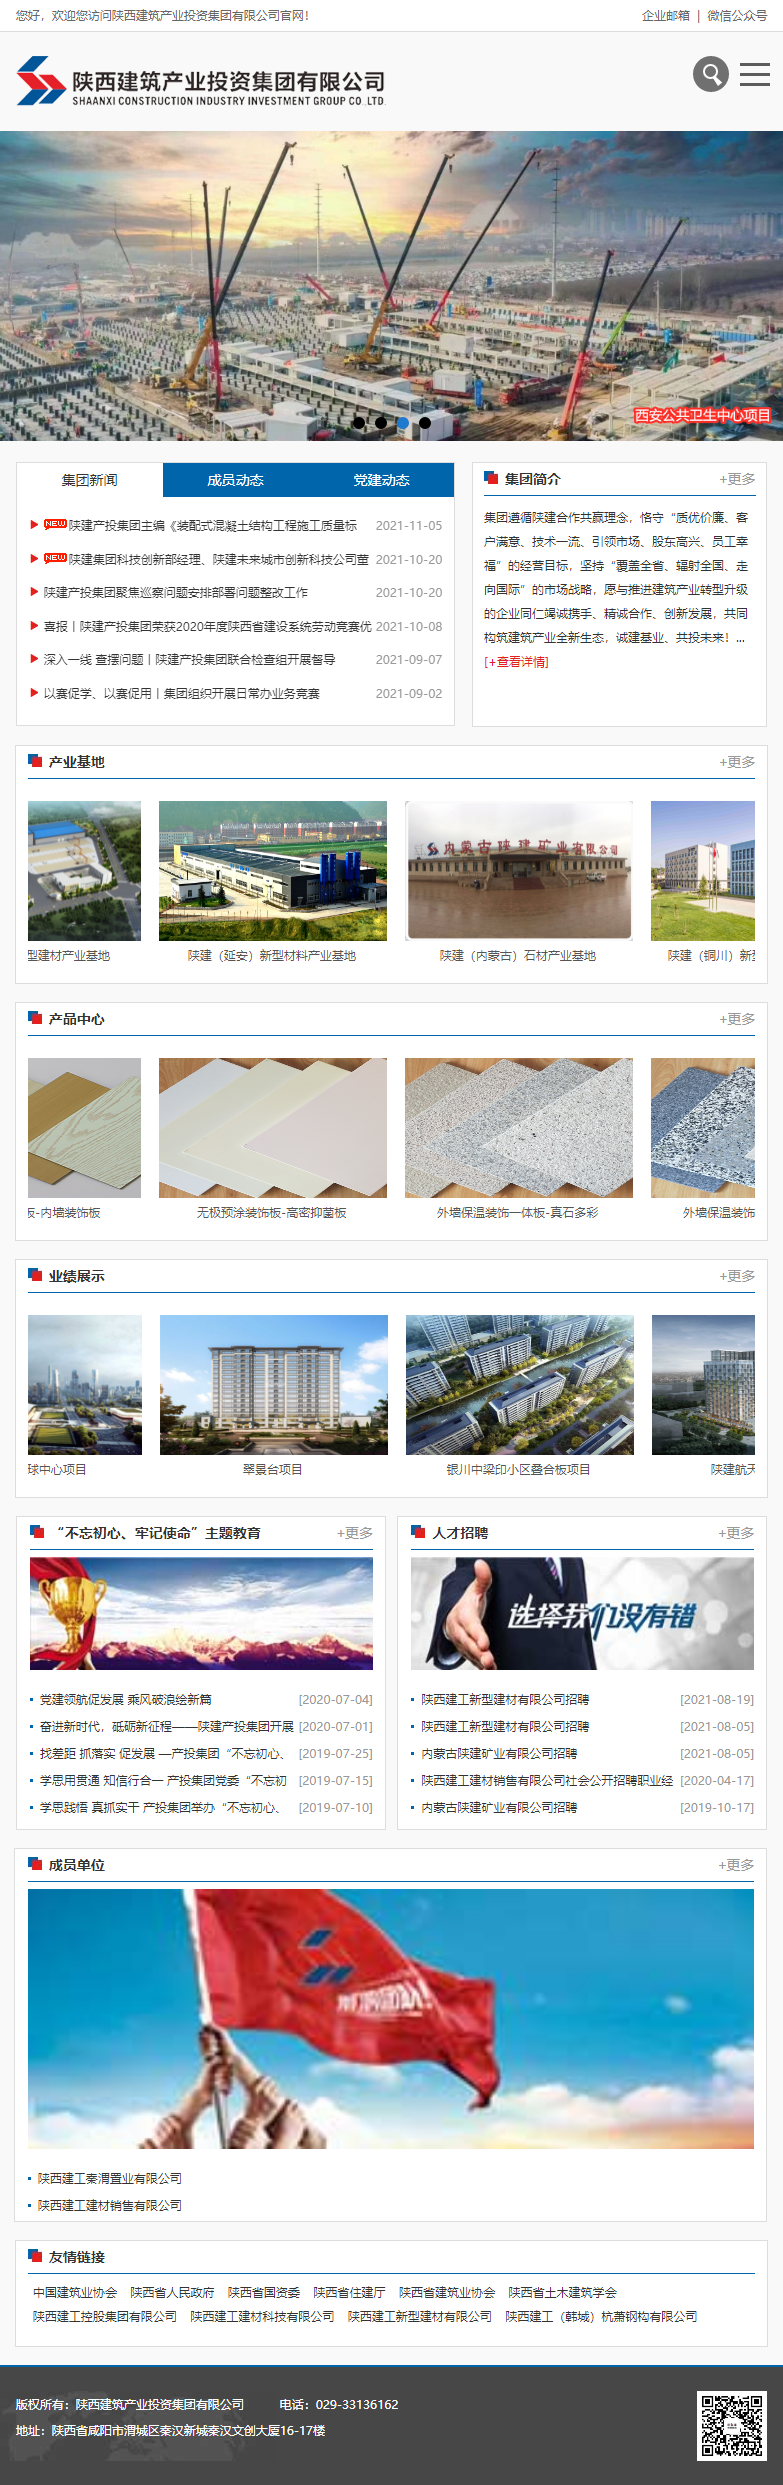 陕西建筑产业投资集团有限公司网站案例